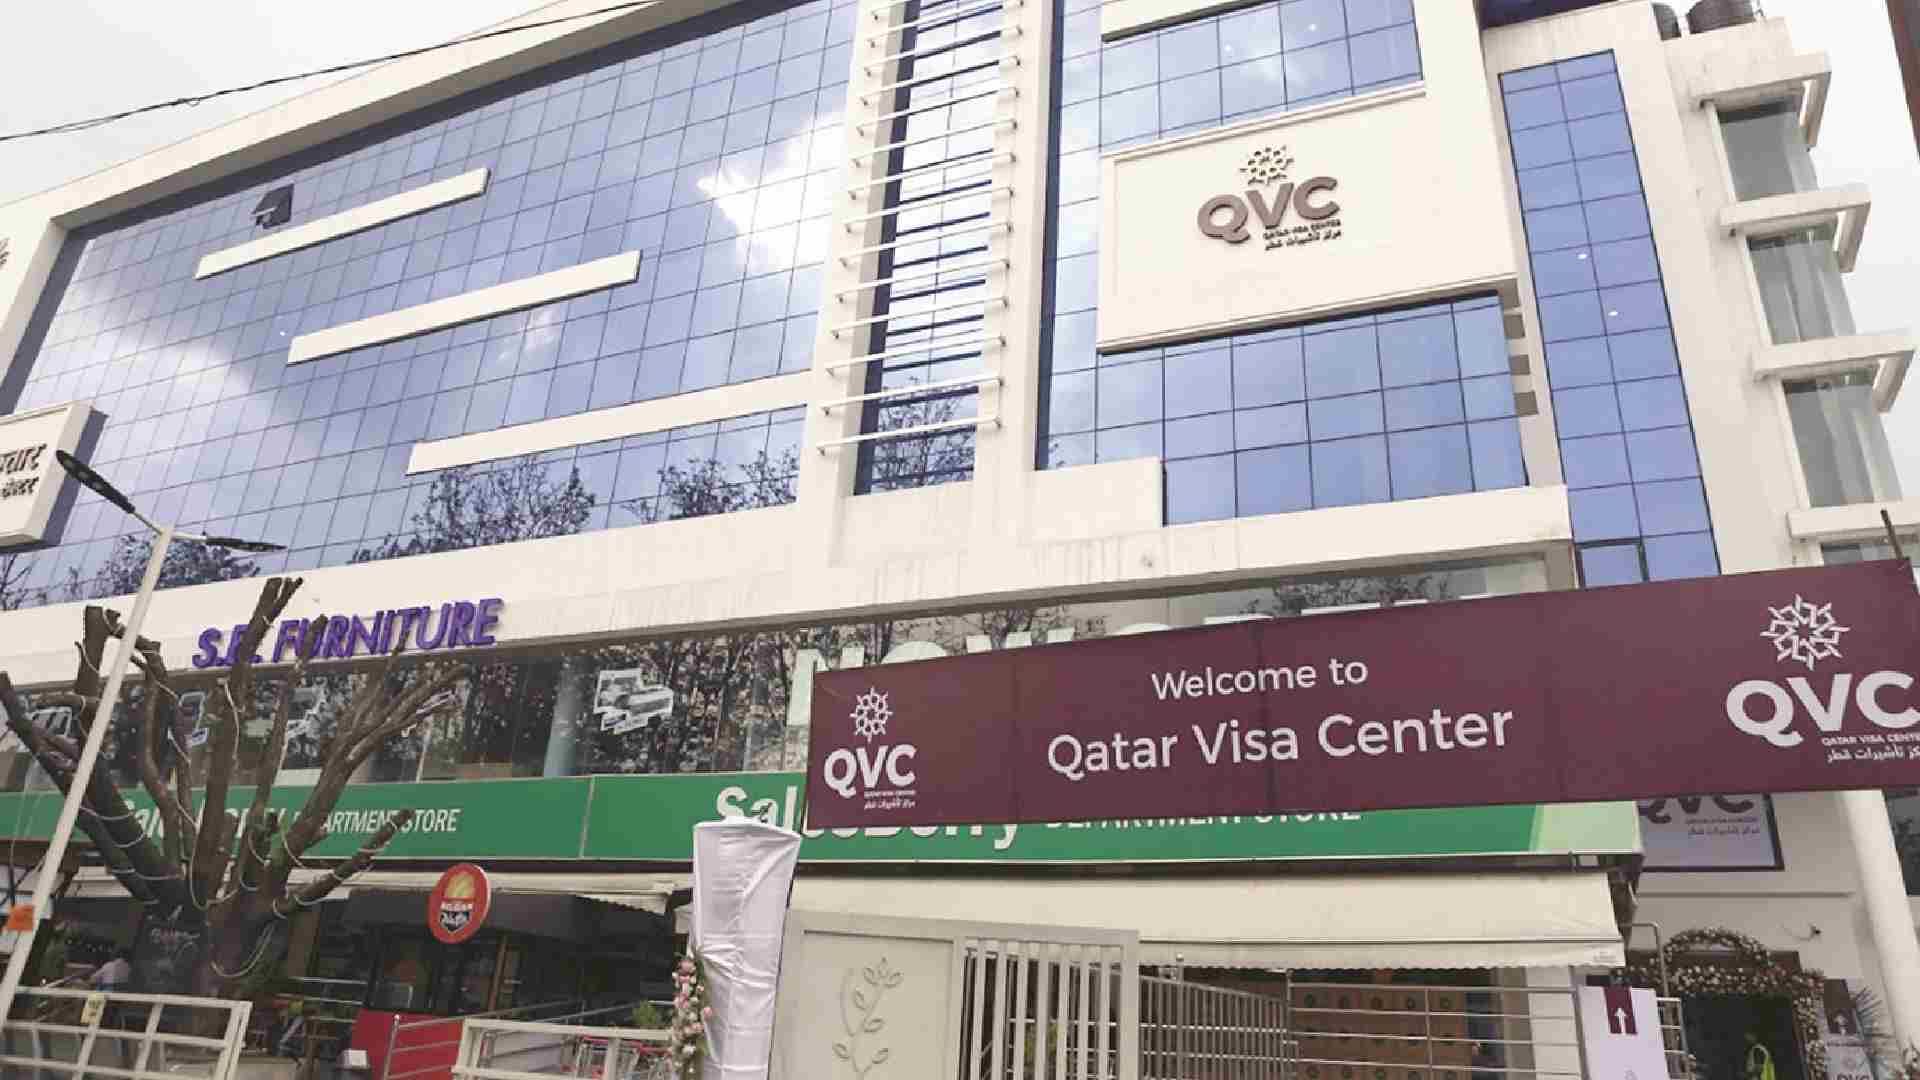 QVC Qatar Visa Center